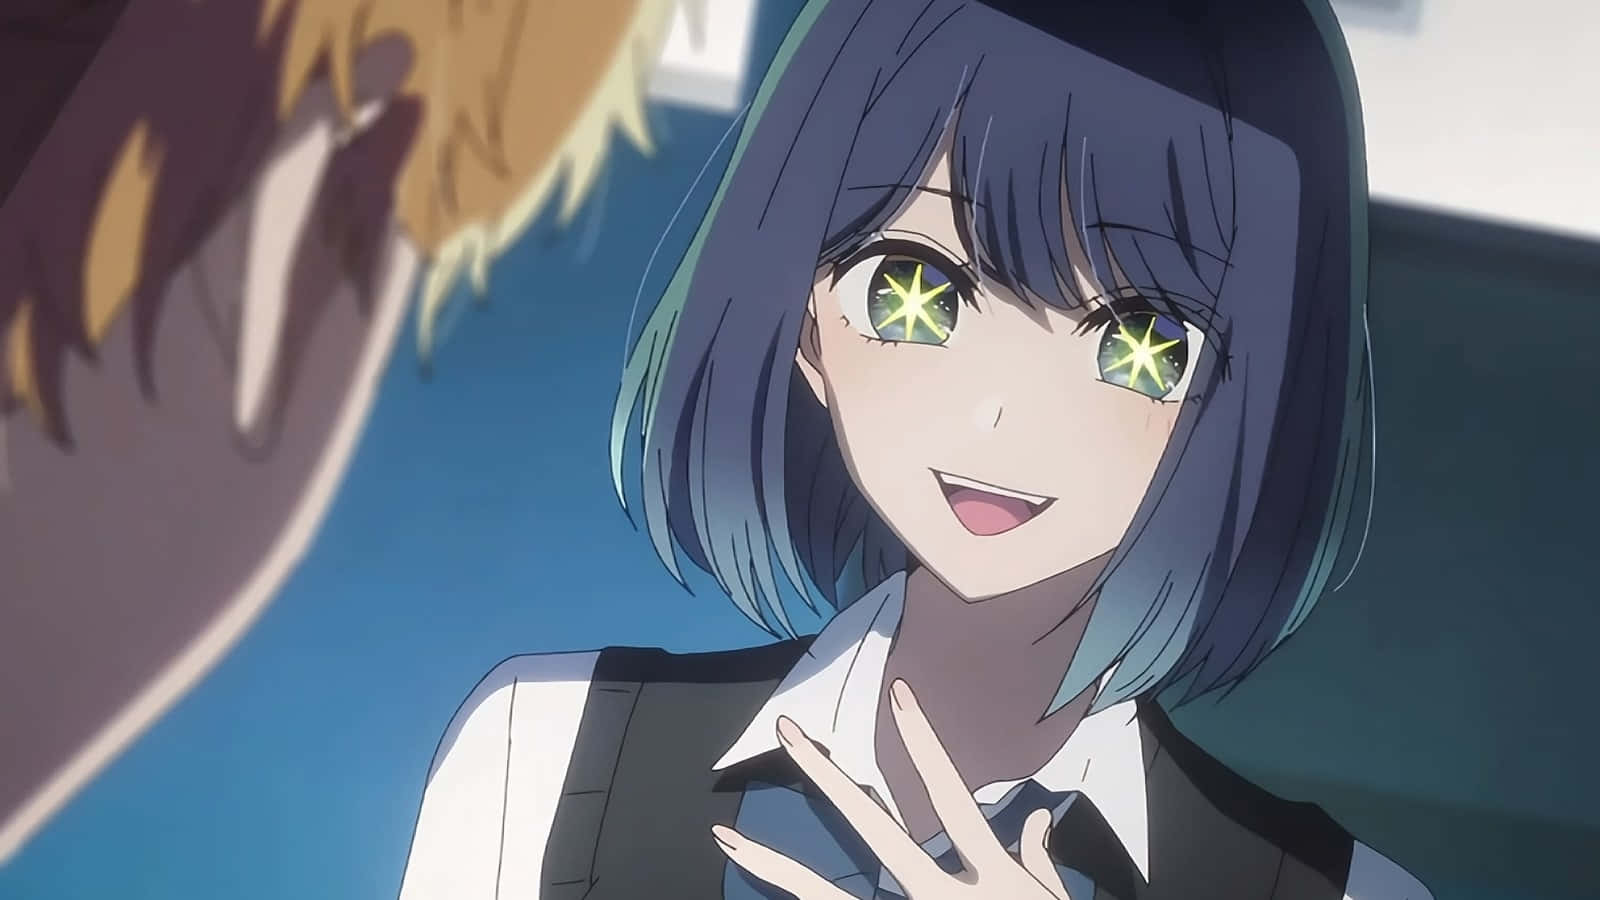 Sparkling Eyes Anime Girl Wallpaper